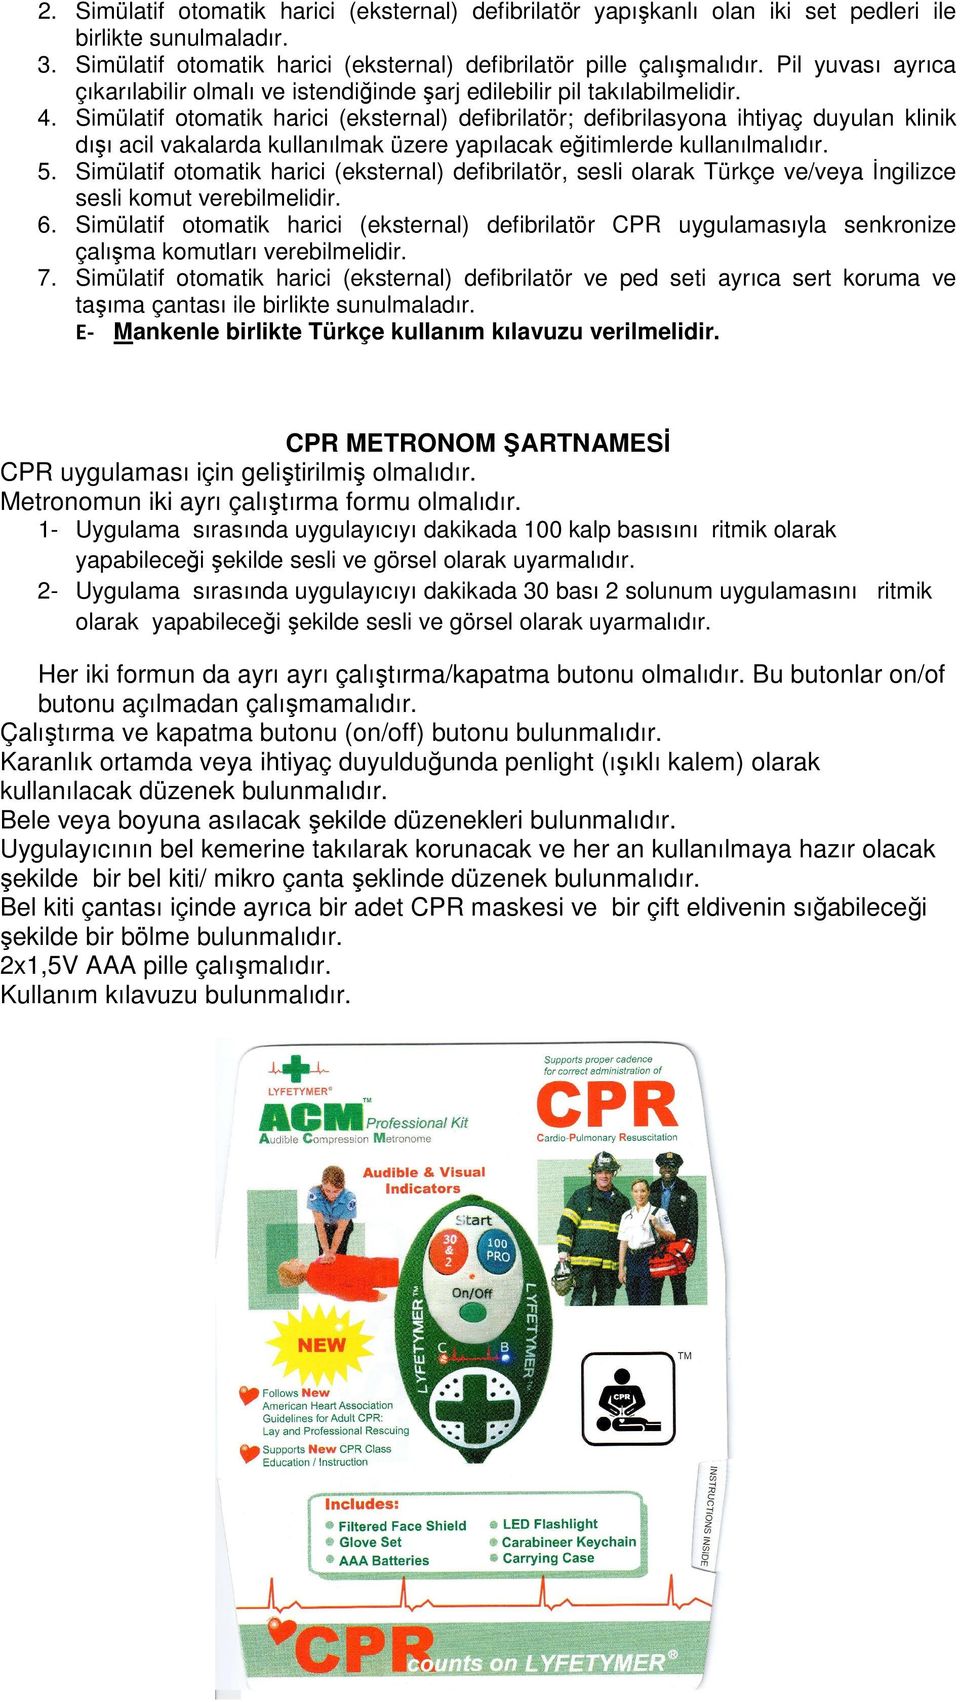 Simülatif otomatik harici (eksternal) defibrilatör; defibrilasyona ihtiyaç duyulan klinik dışı acil vakalarda kullanılmak üzere yapılacak eğitimlerde kullanılmalıdır. 5.